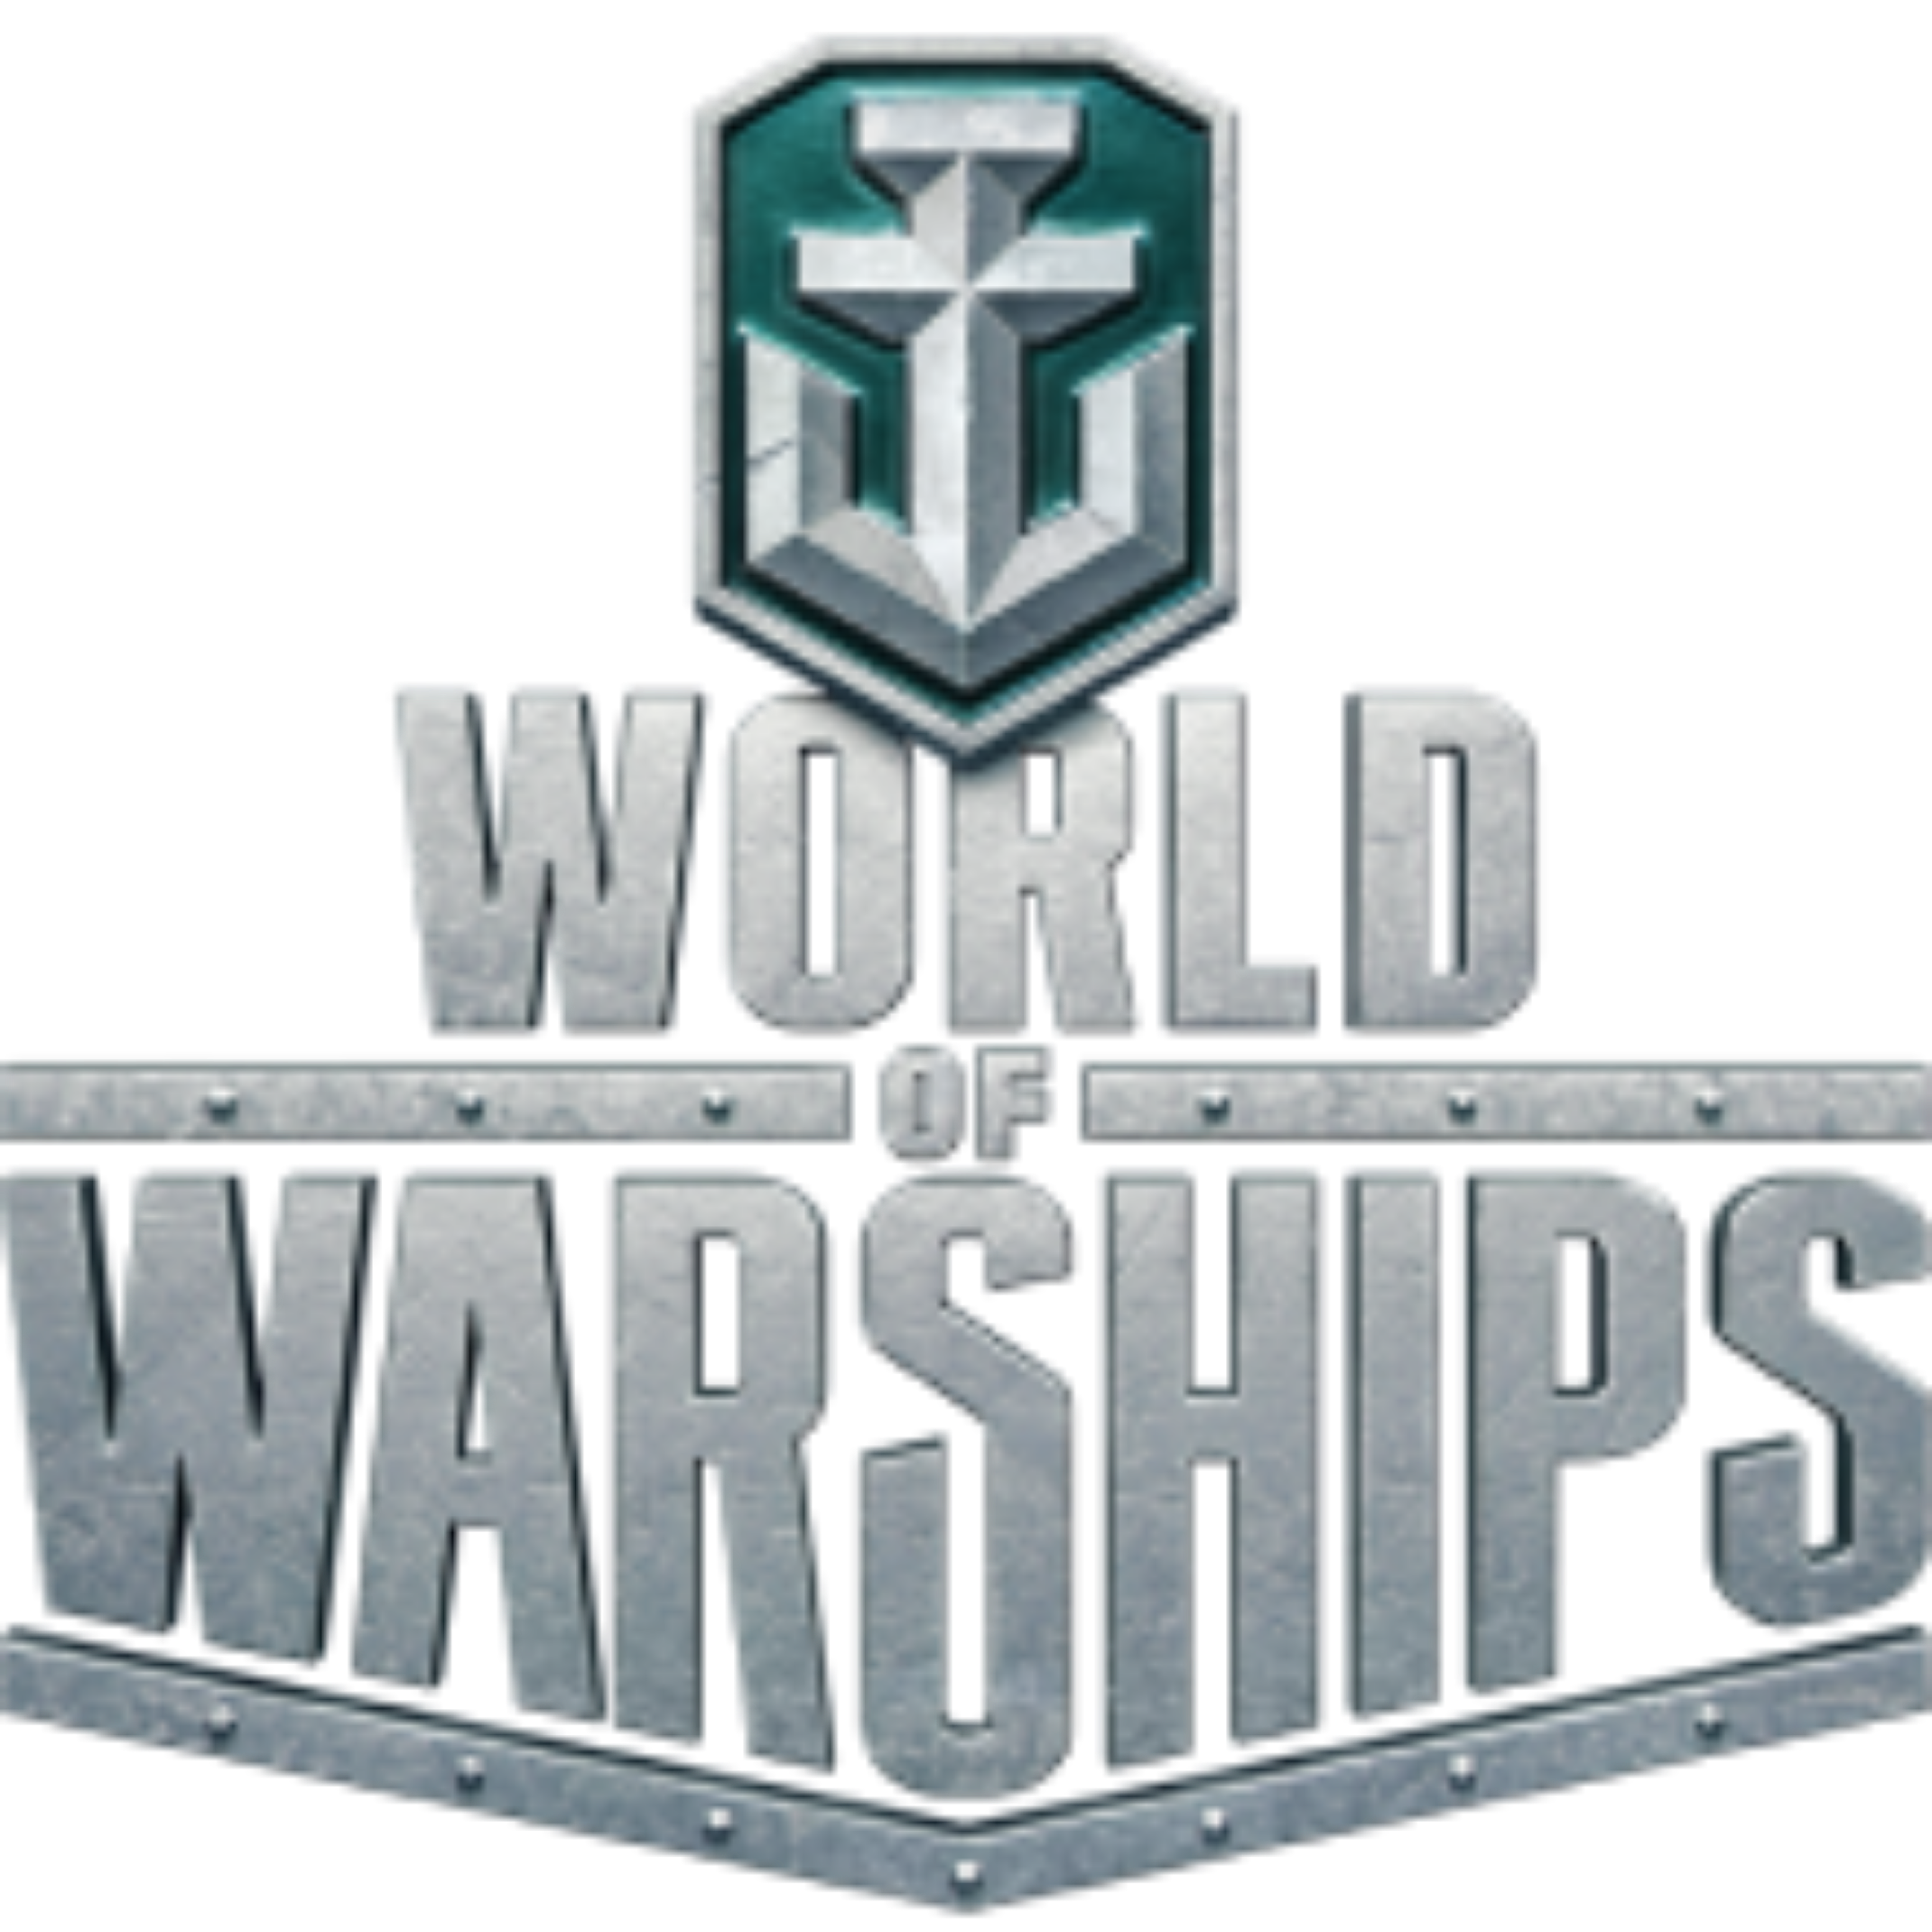 продажа предметов, вещей Промокод на имущество в подарок - Бонус-коды в World of Warships